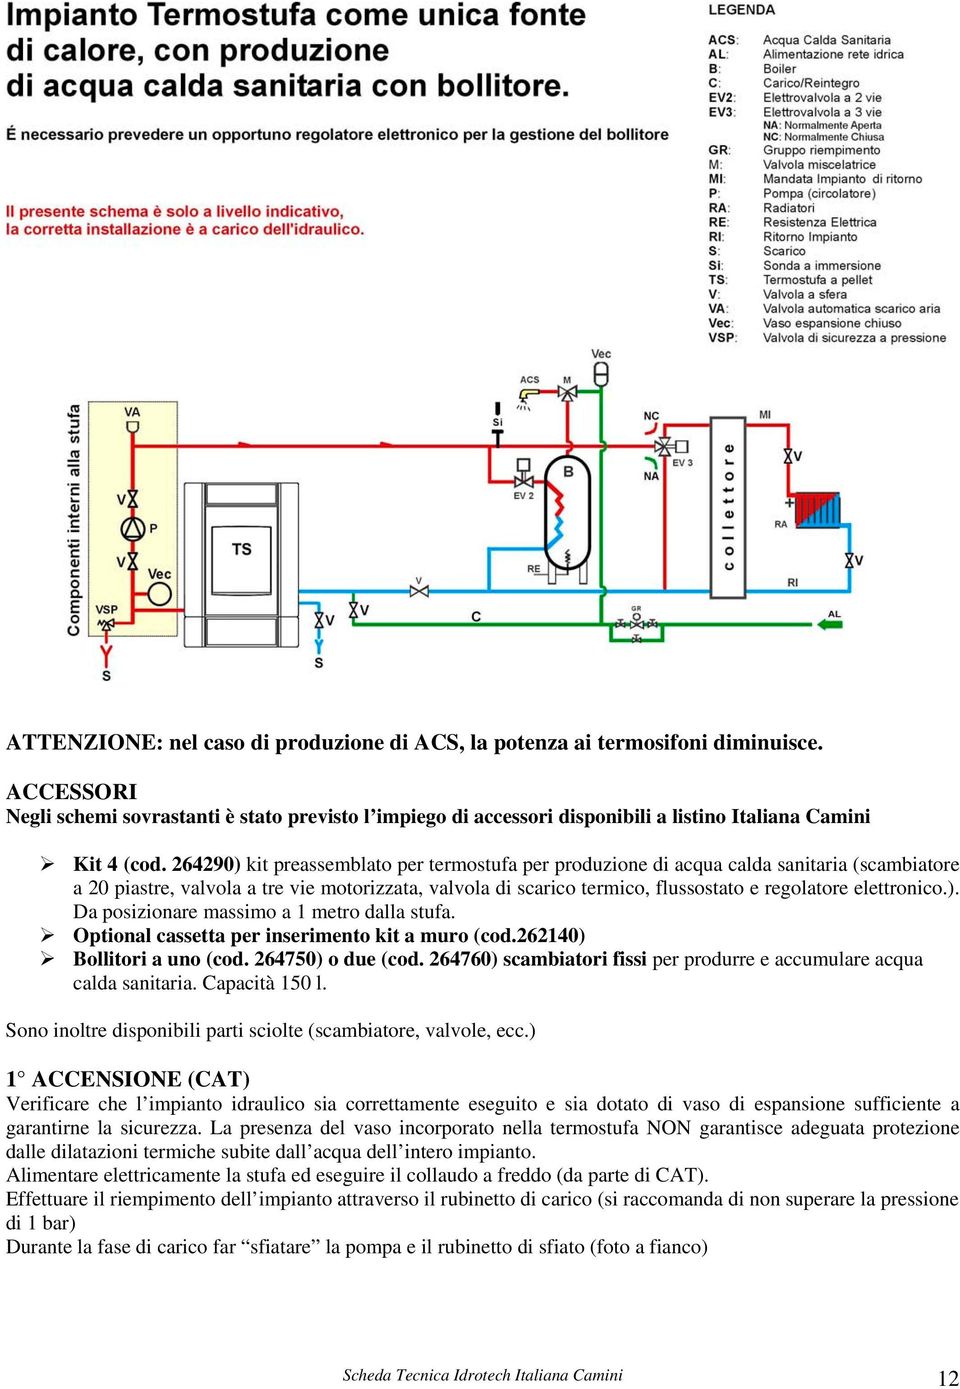 264290) kit preassemblato per termostufa per produzione di acqua calda sanitaria (scambiatore a 20 piastre, valvola a tre vie motorizzata, valvola di scarico termico, flussostato e regolatore